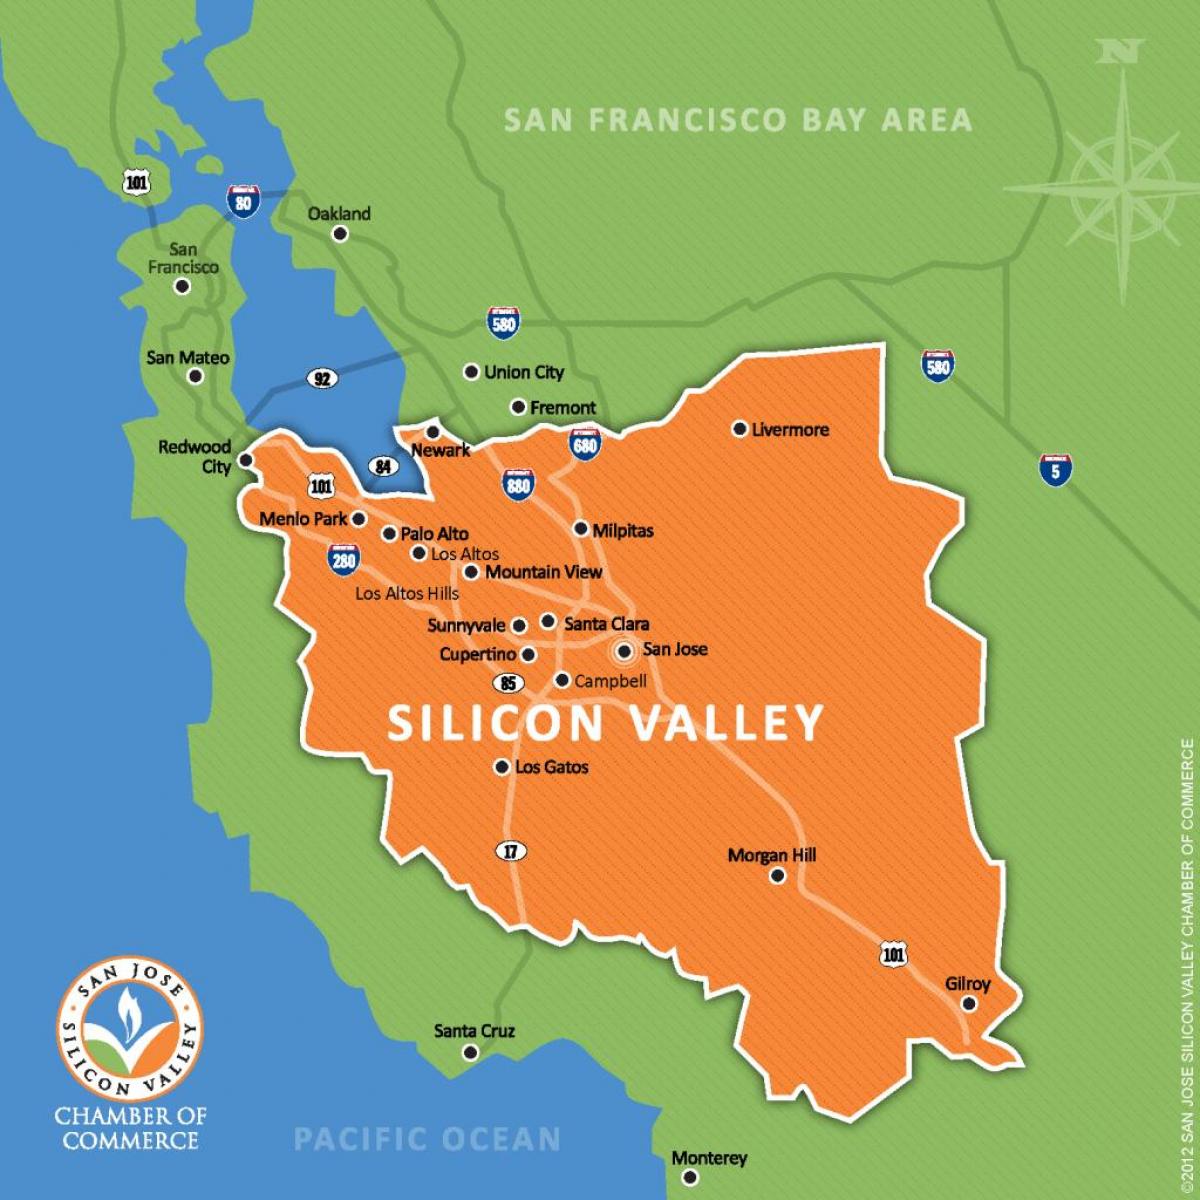 Silicon valley na mapie świata